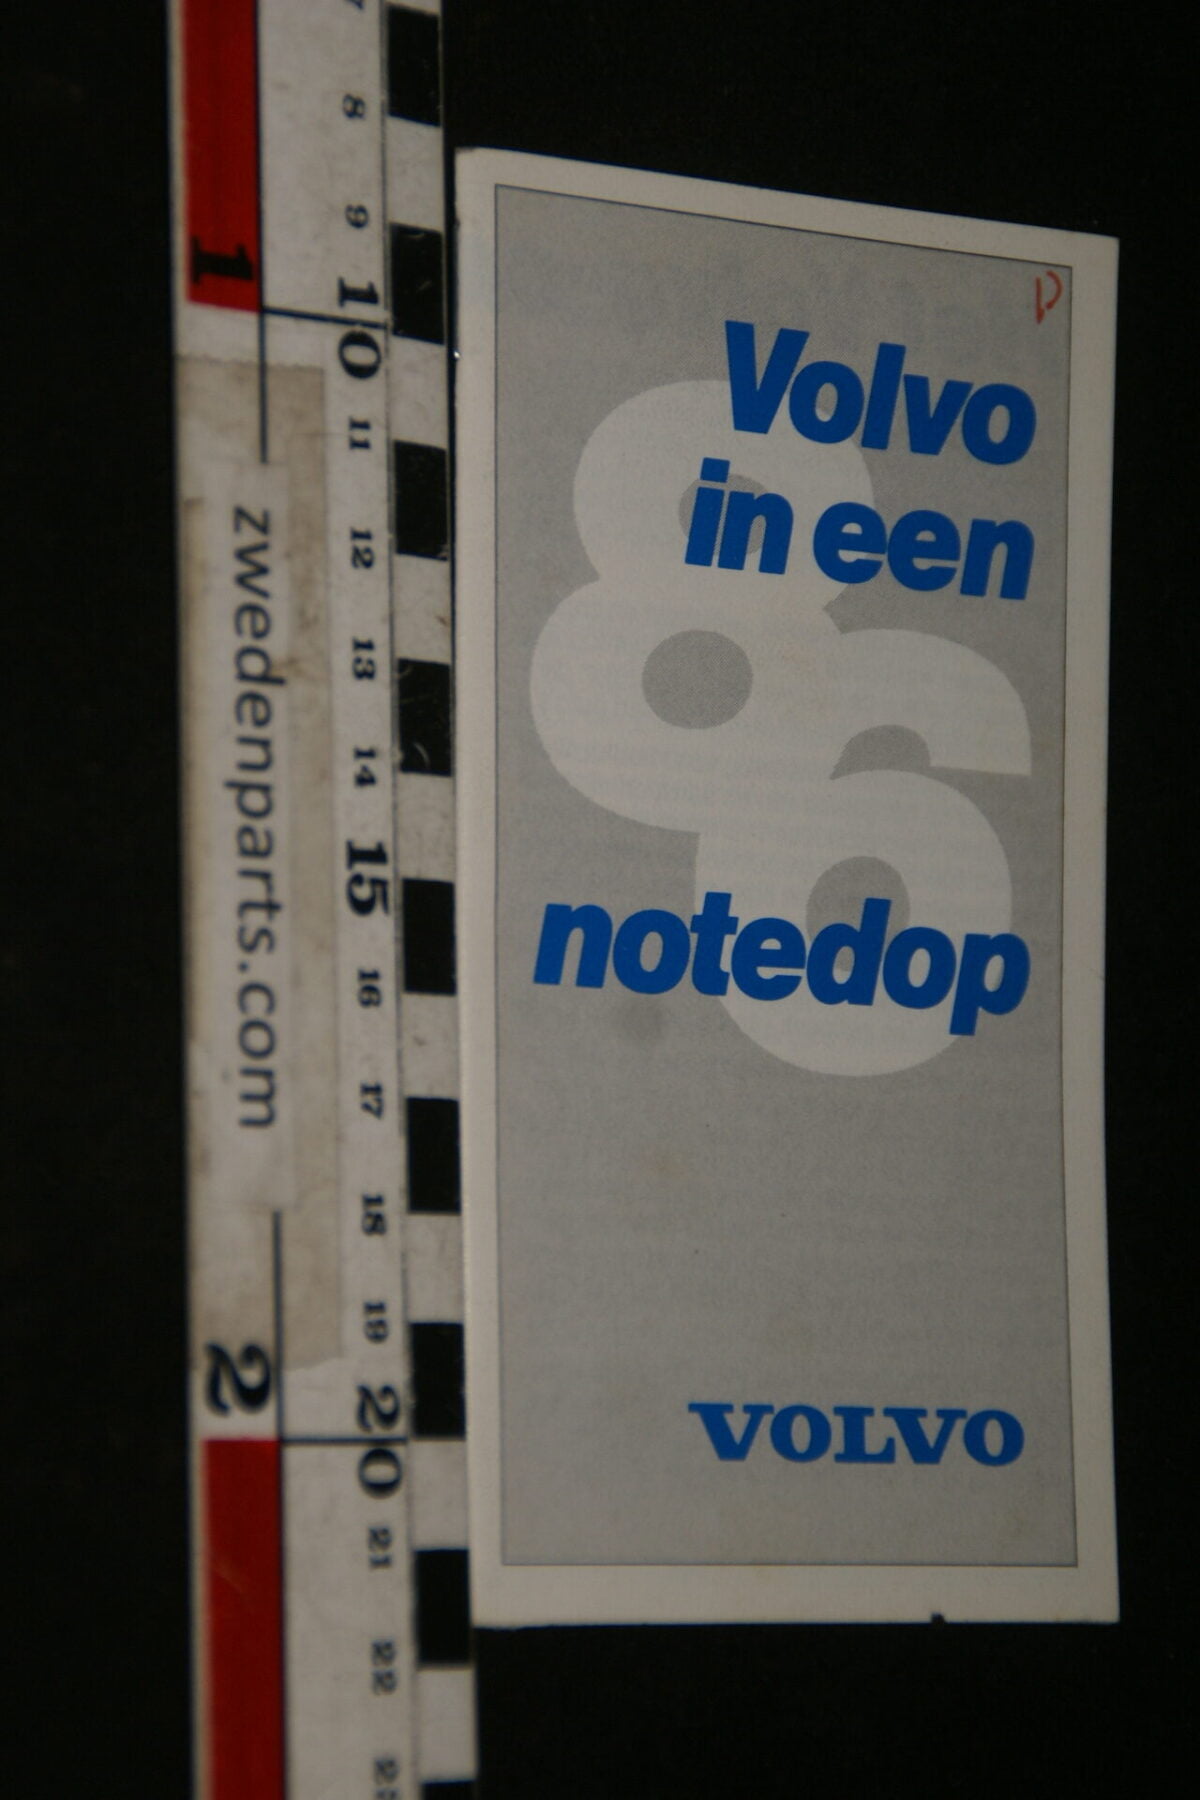 DSC06181 1986 origineel boekje Volvo in een notedop, nr. INF 14-117-6c2e4dee